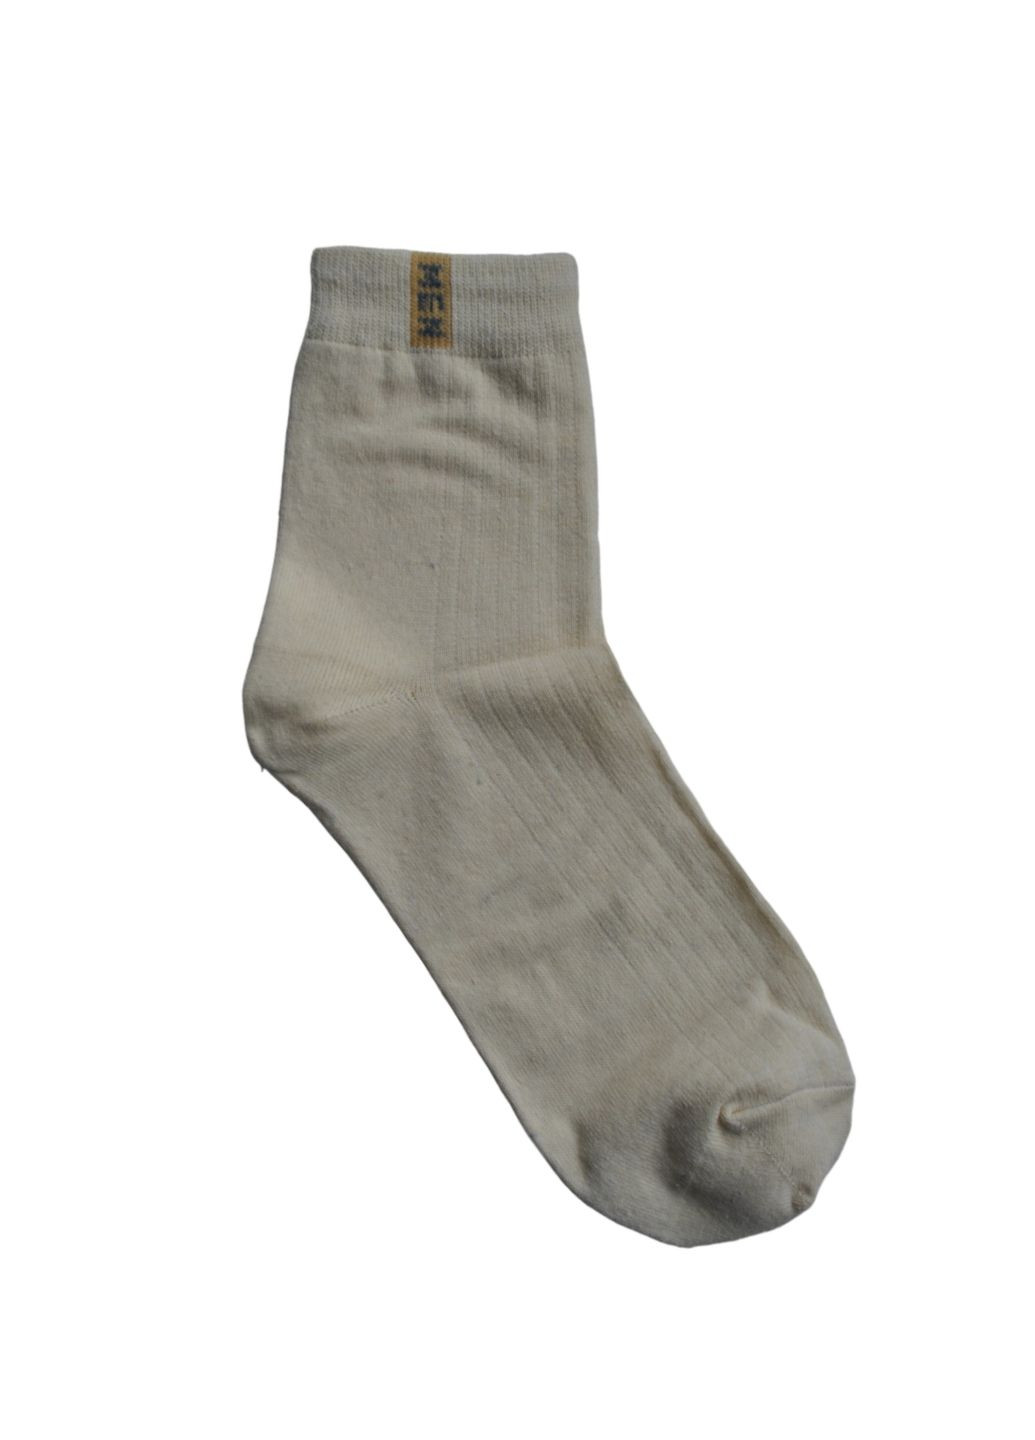 NL () Шкарпетки чол. арт. /23-25/бежевий. Набір (3 шт.) MZ 110 (259038663)